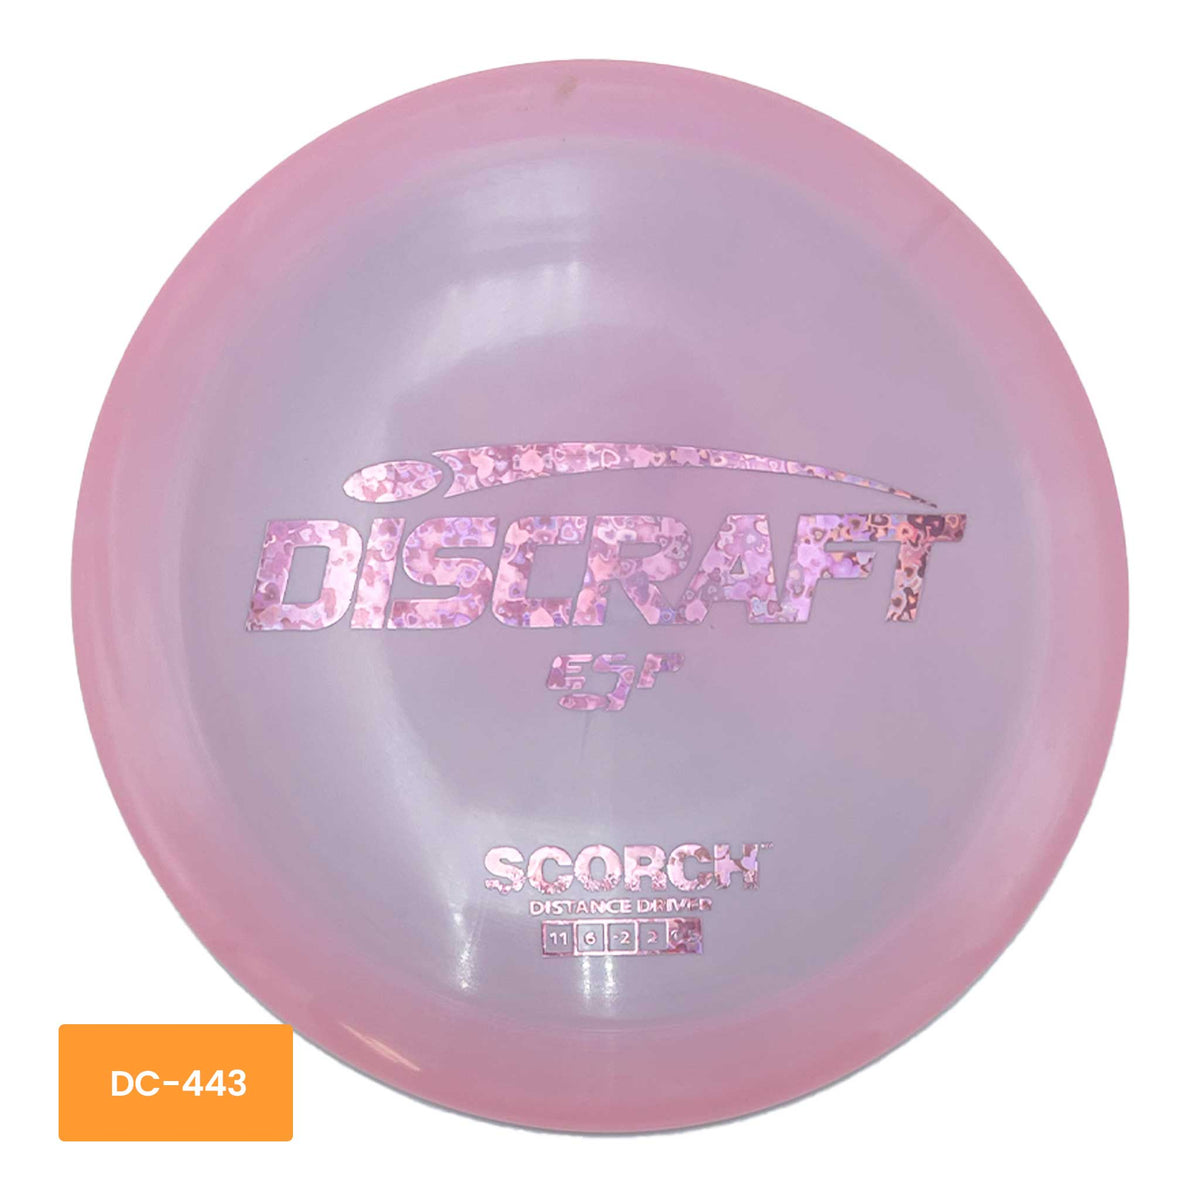 ESP Discraft Scorch distance driver - Pink